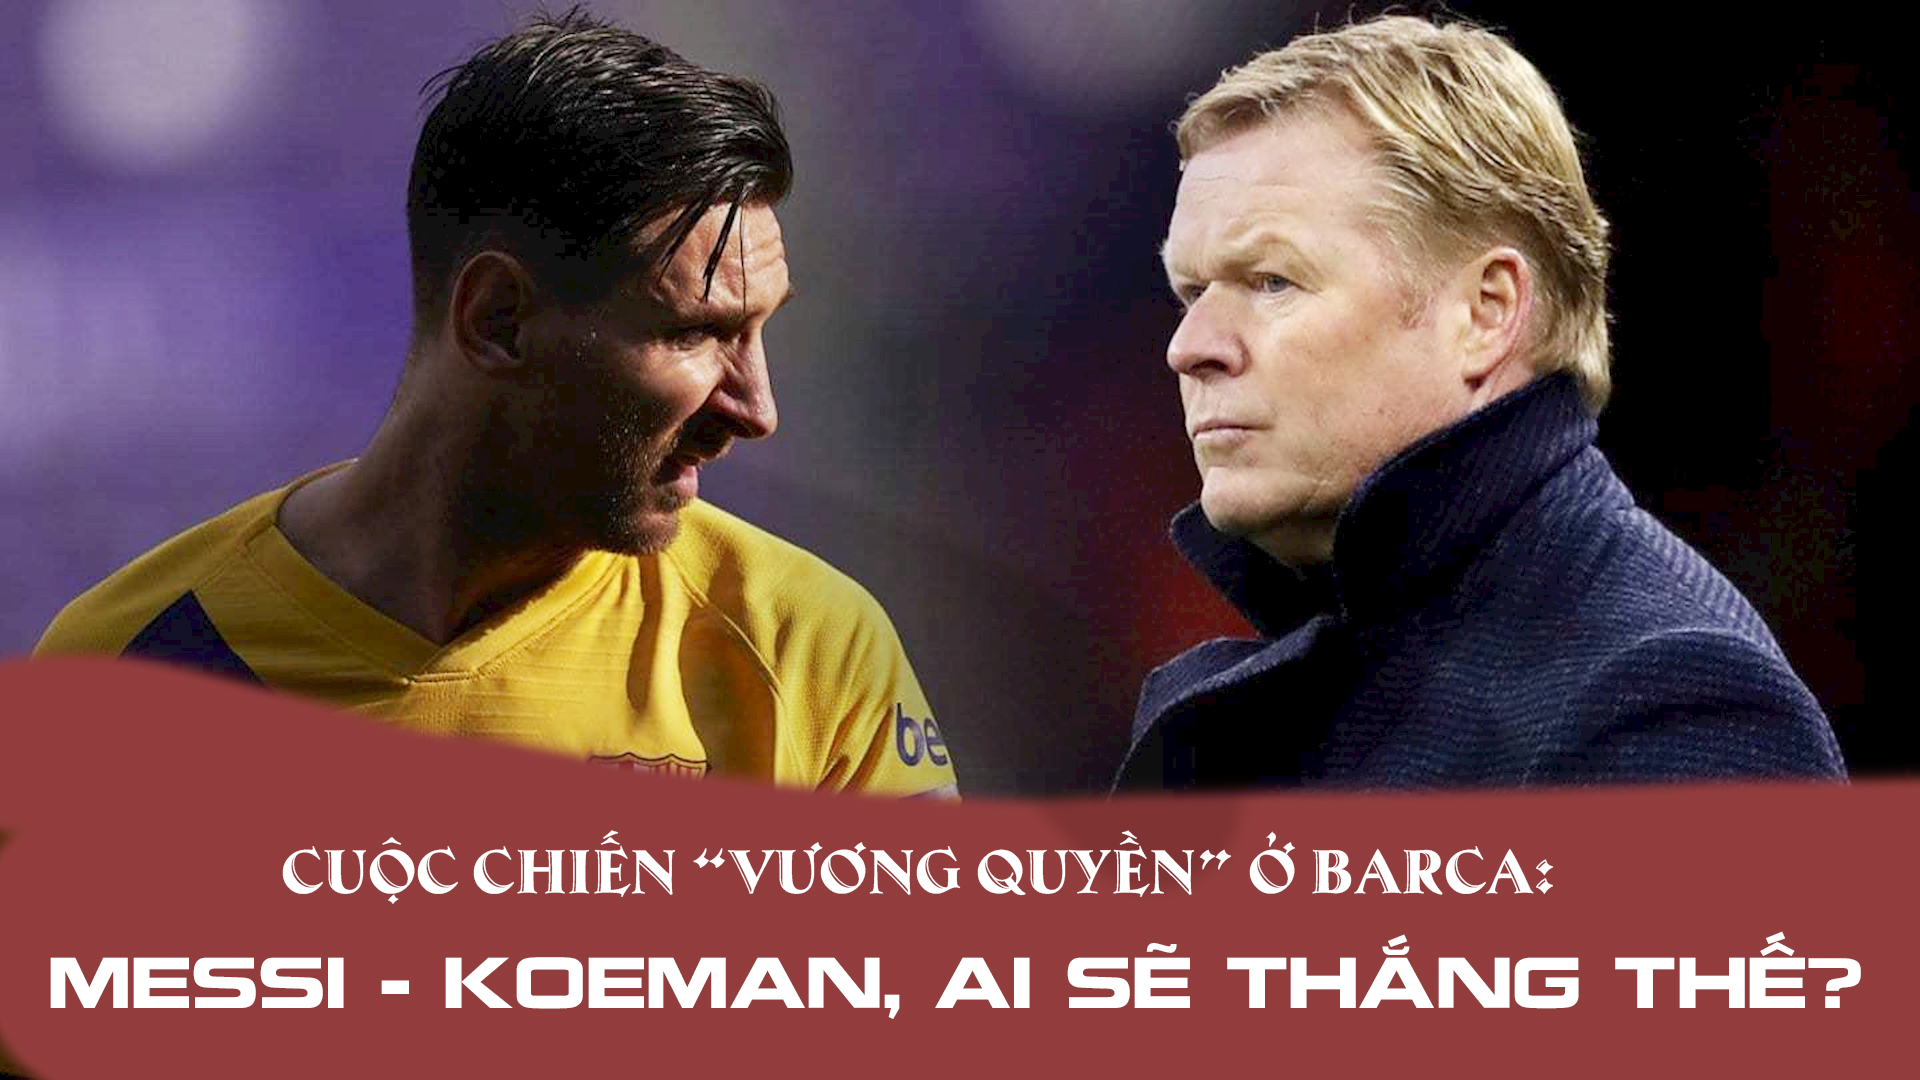 Cuộc chiến “vương quyền” ở Barca: Messi - Koeman, ai sẽ thắng thế? - 1